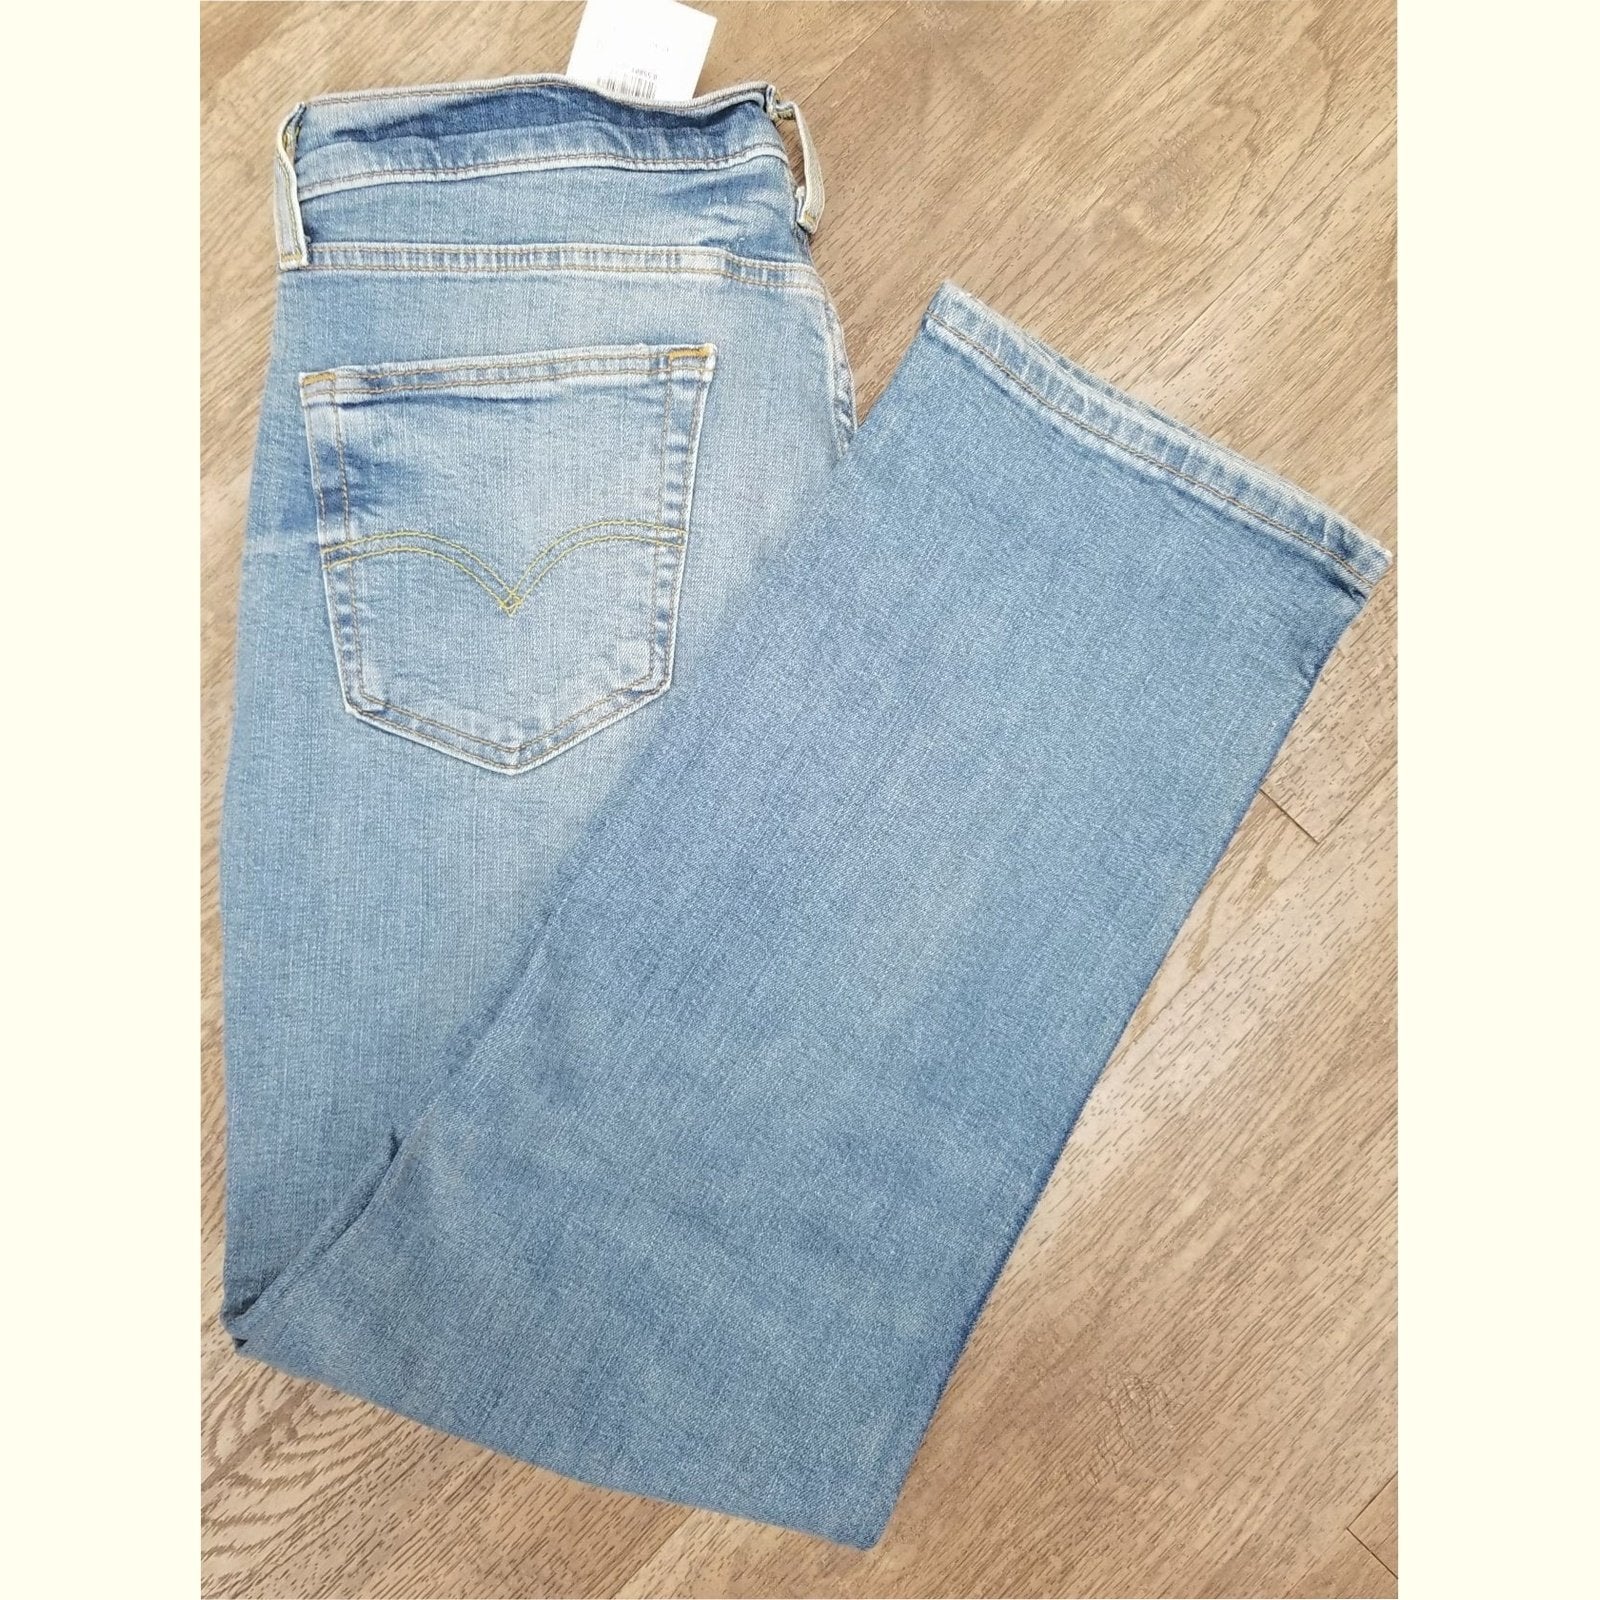 Levi’s Men’s Jeans 514 Straight Fit Flex 0051412860 - Levi's